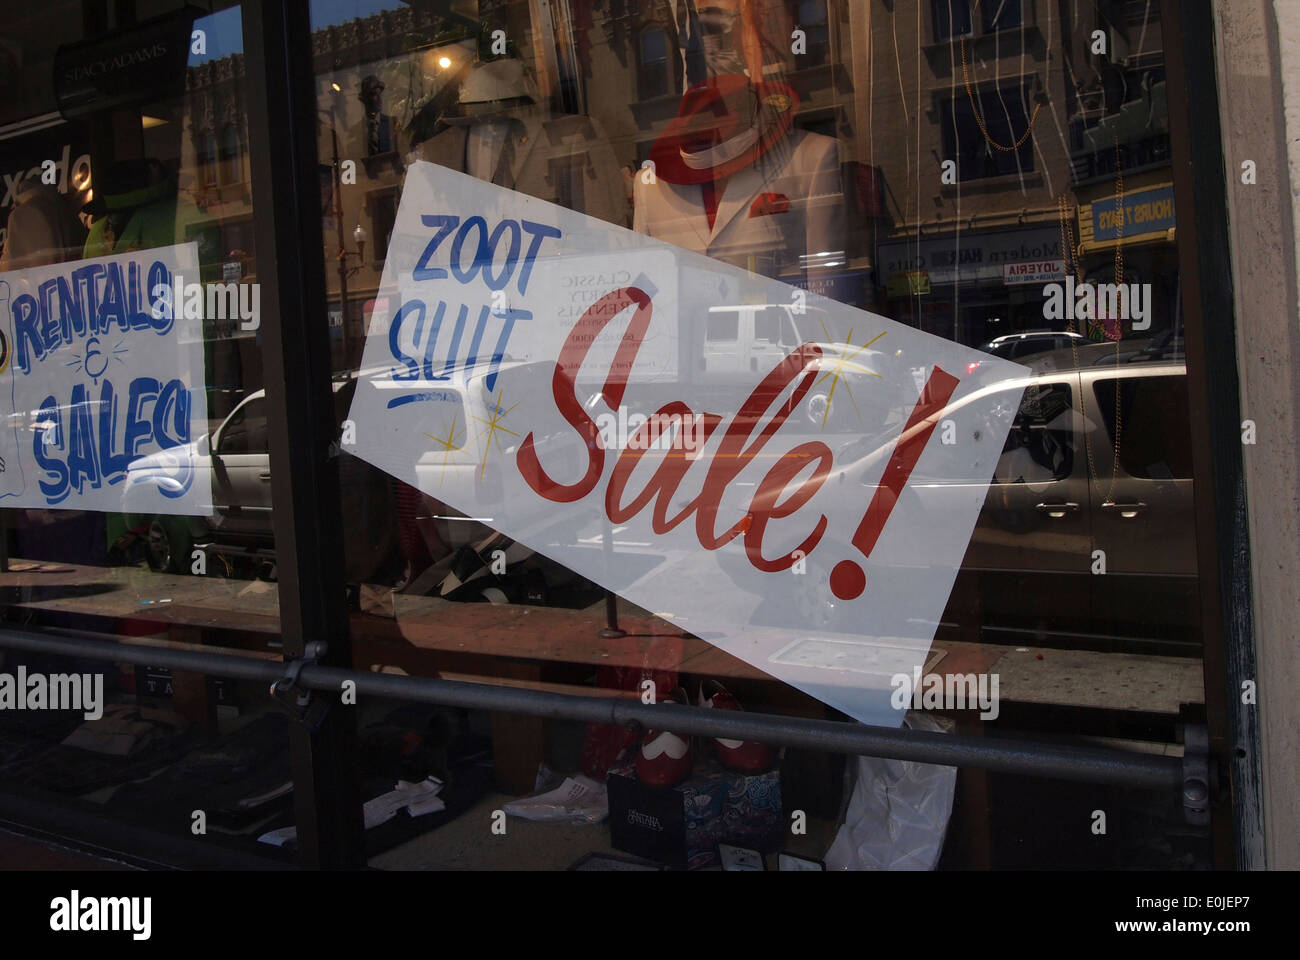 Zoot Suit Verkaufsschild speichern Fenster Mission Street San Francisco Kalifornien Stockfoto